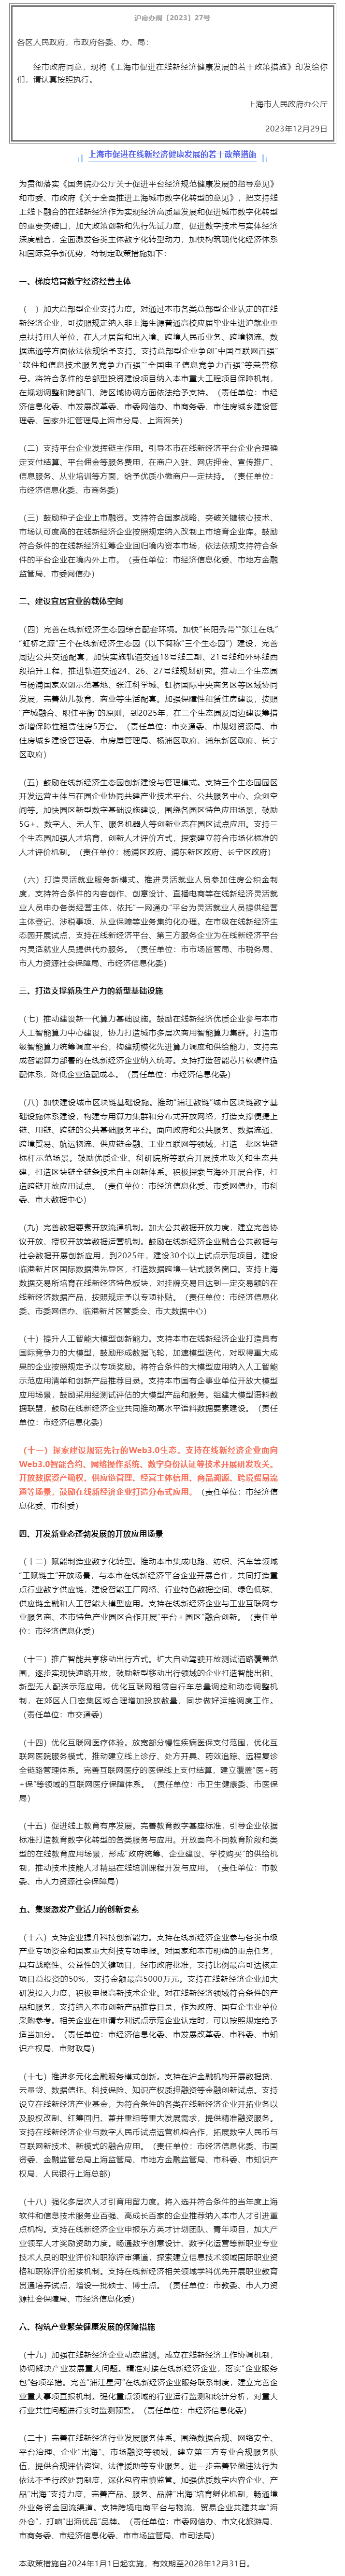 上海市人民政府办公厅关于印发《上海市促进在线新经济健康发展的若干政策措施》的通知.png